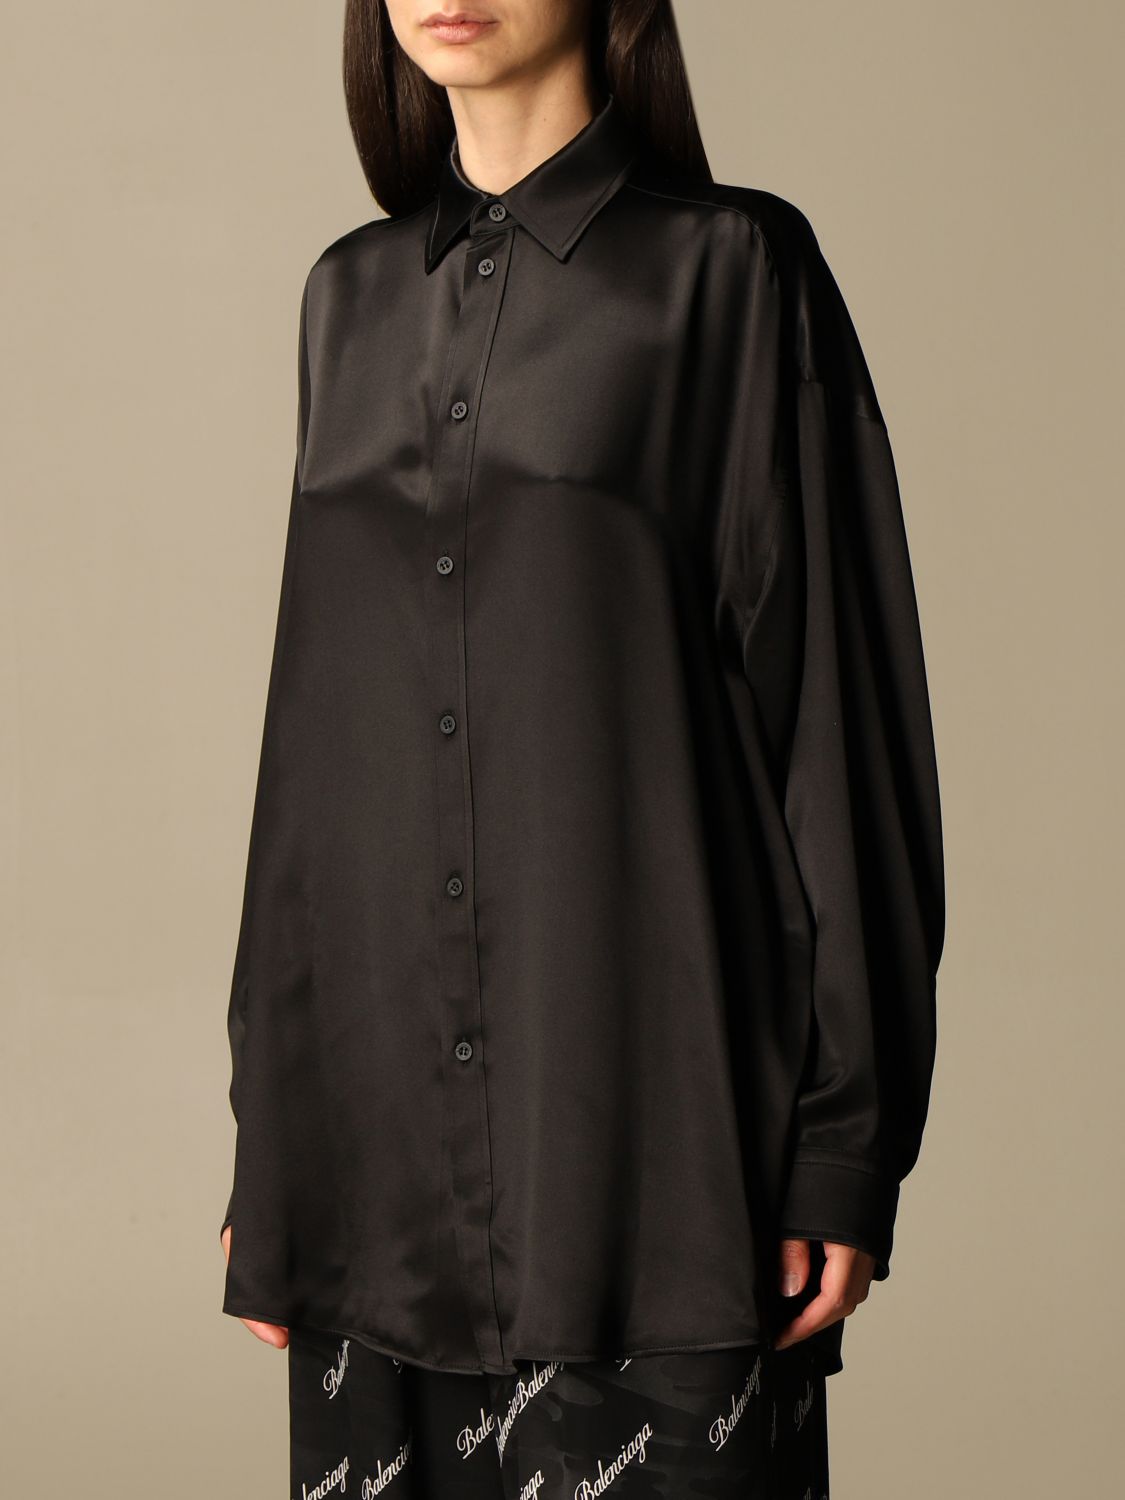 Adular Decano Acusación BALENCIAGA: silk shirt with back logo - Black | Balenciaga shirt 646840  TJN05 online on GIGLIO.COM